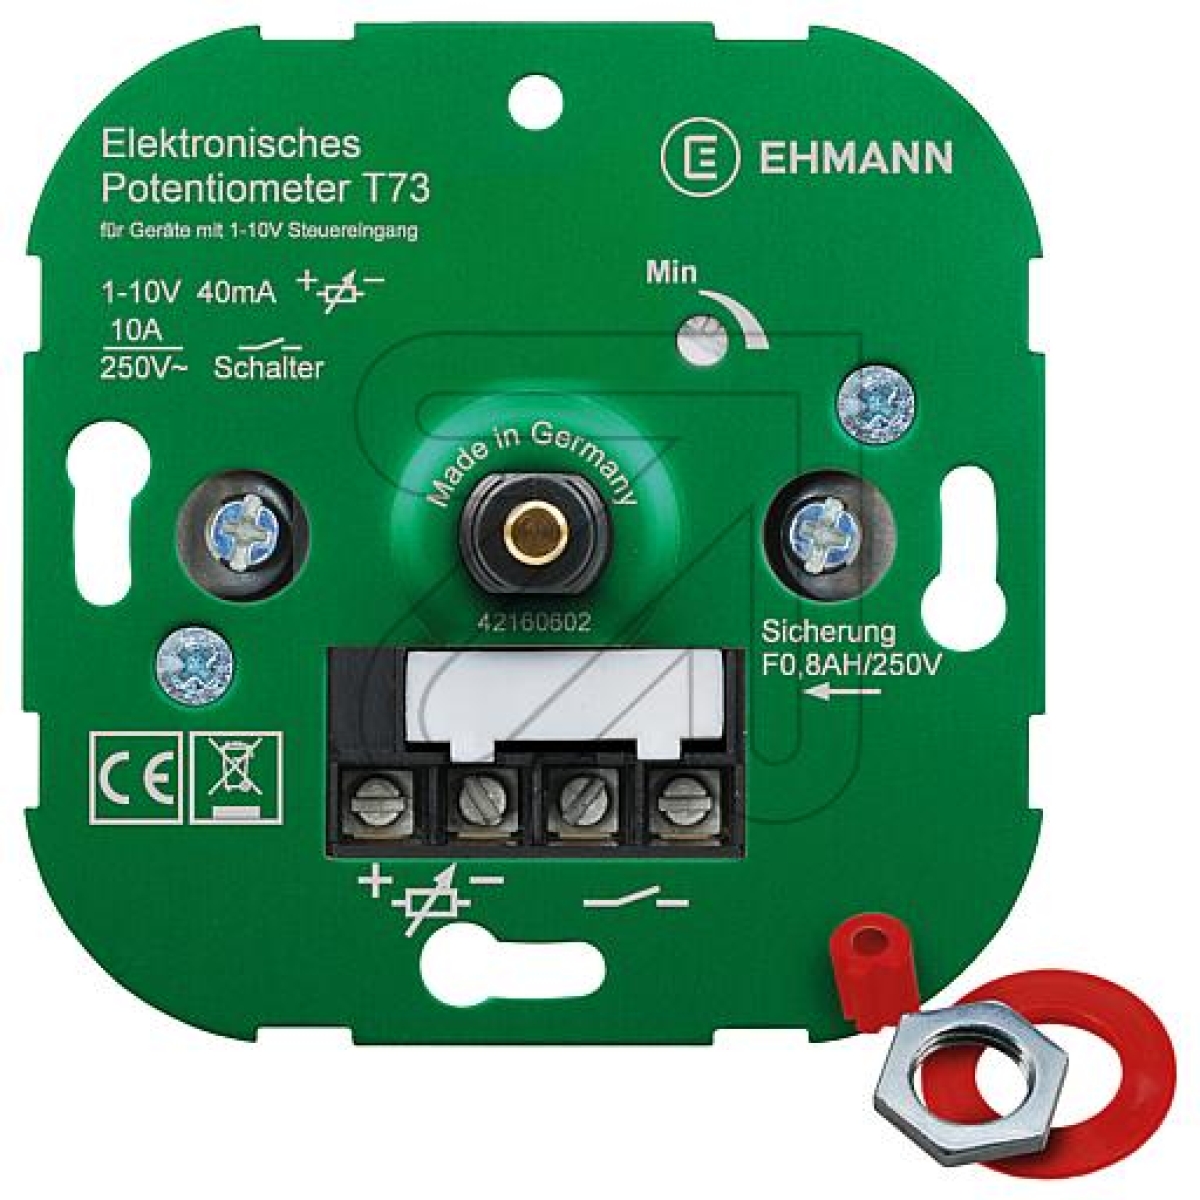 EHMANNElektronisches Potentiometer T73Artikel-Nr: 101435